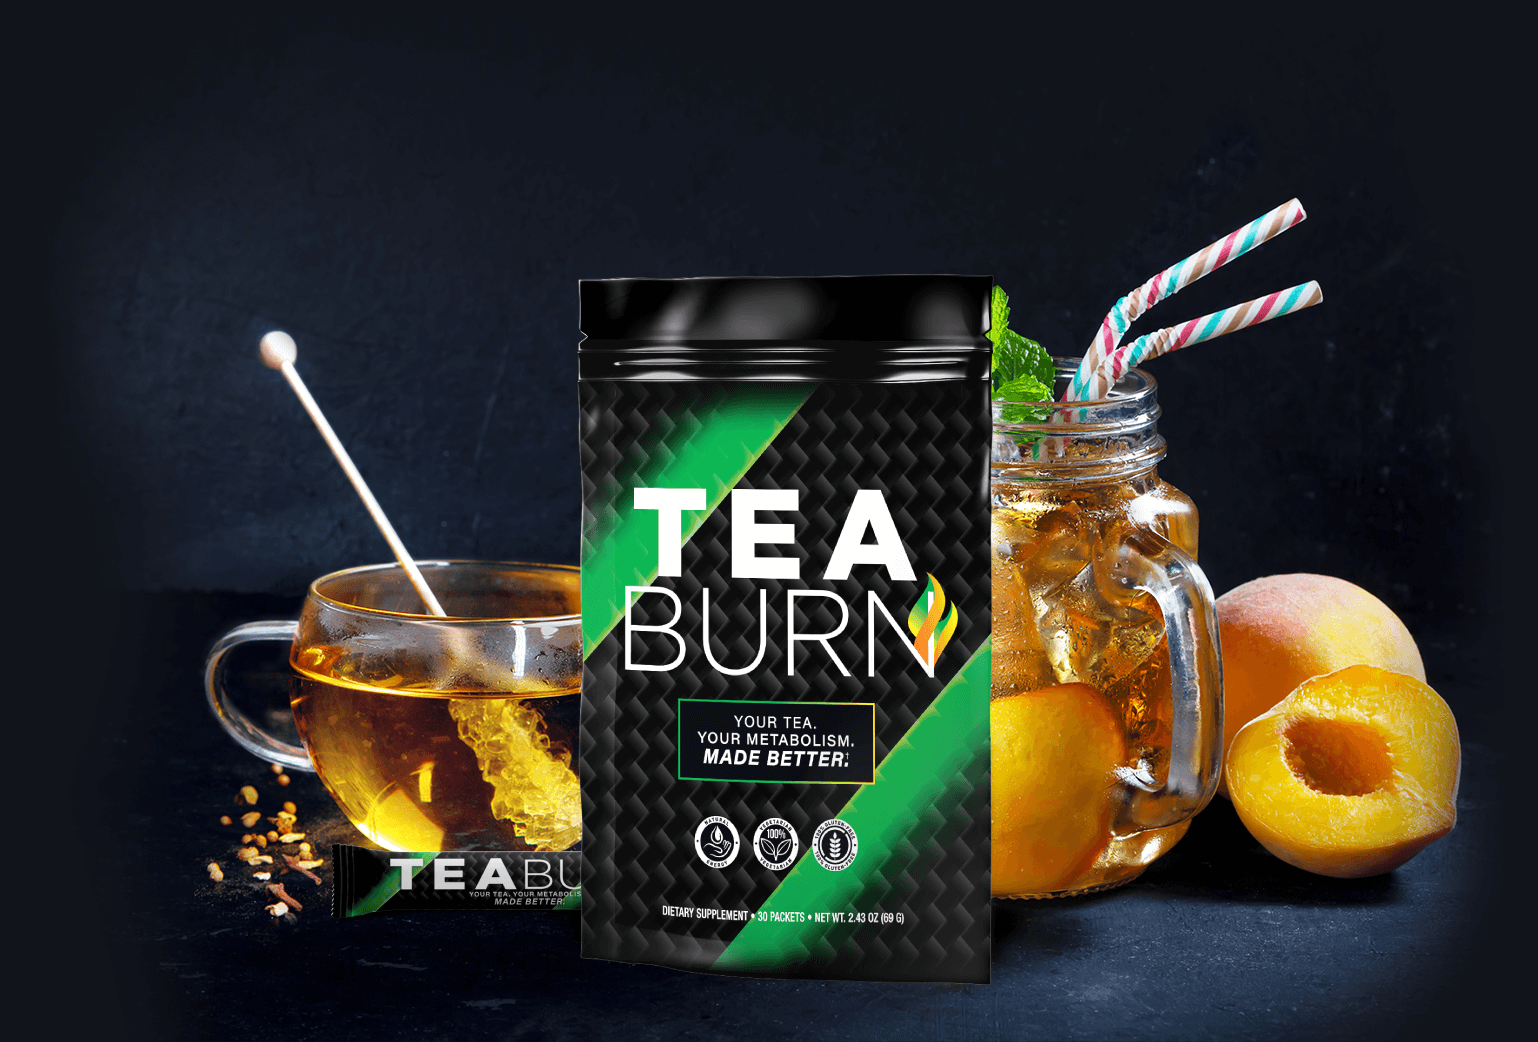 Fat Loss Tea - Tea Burn